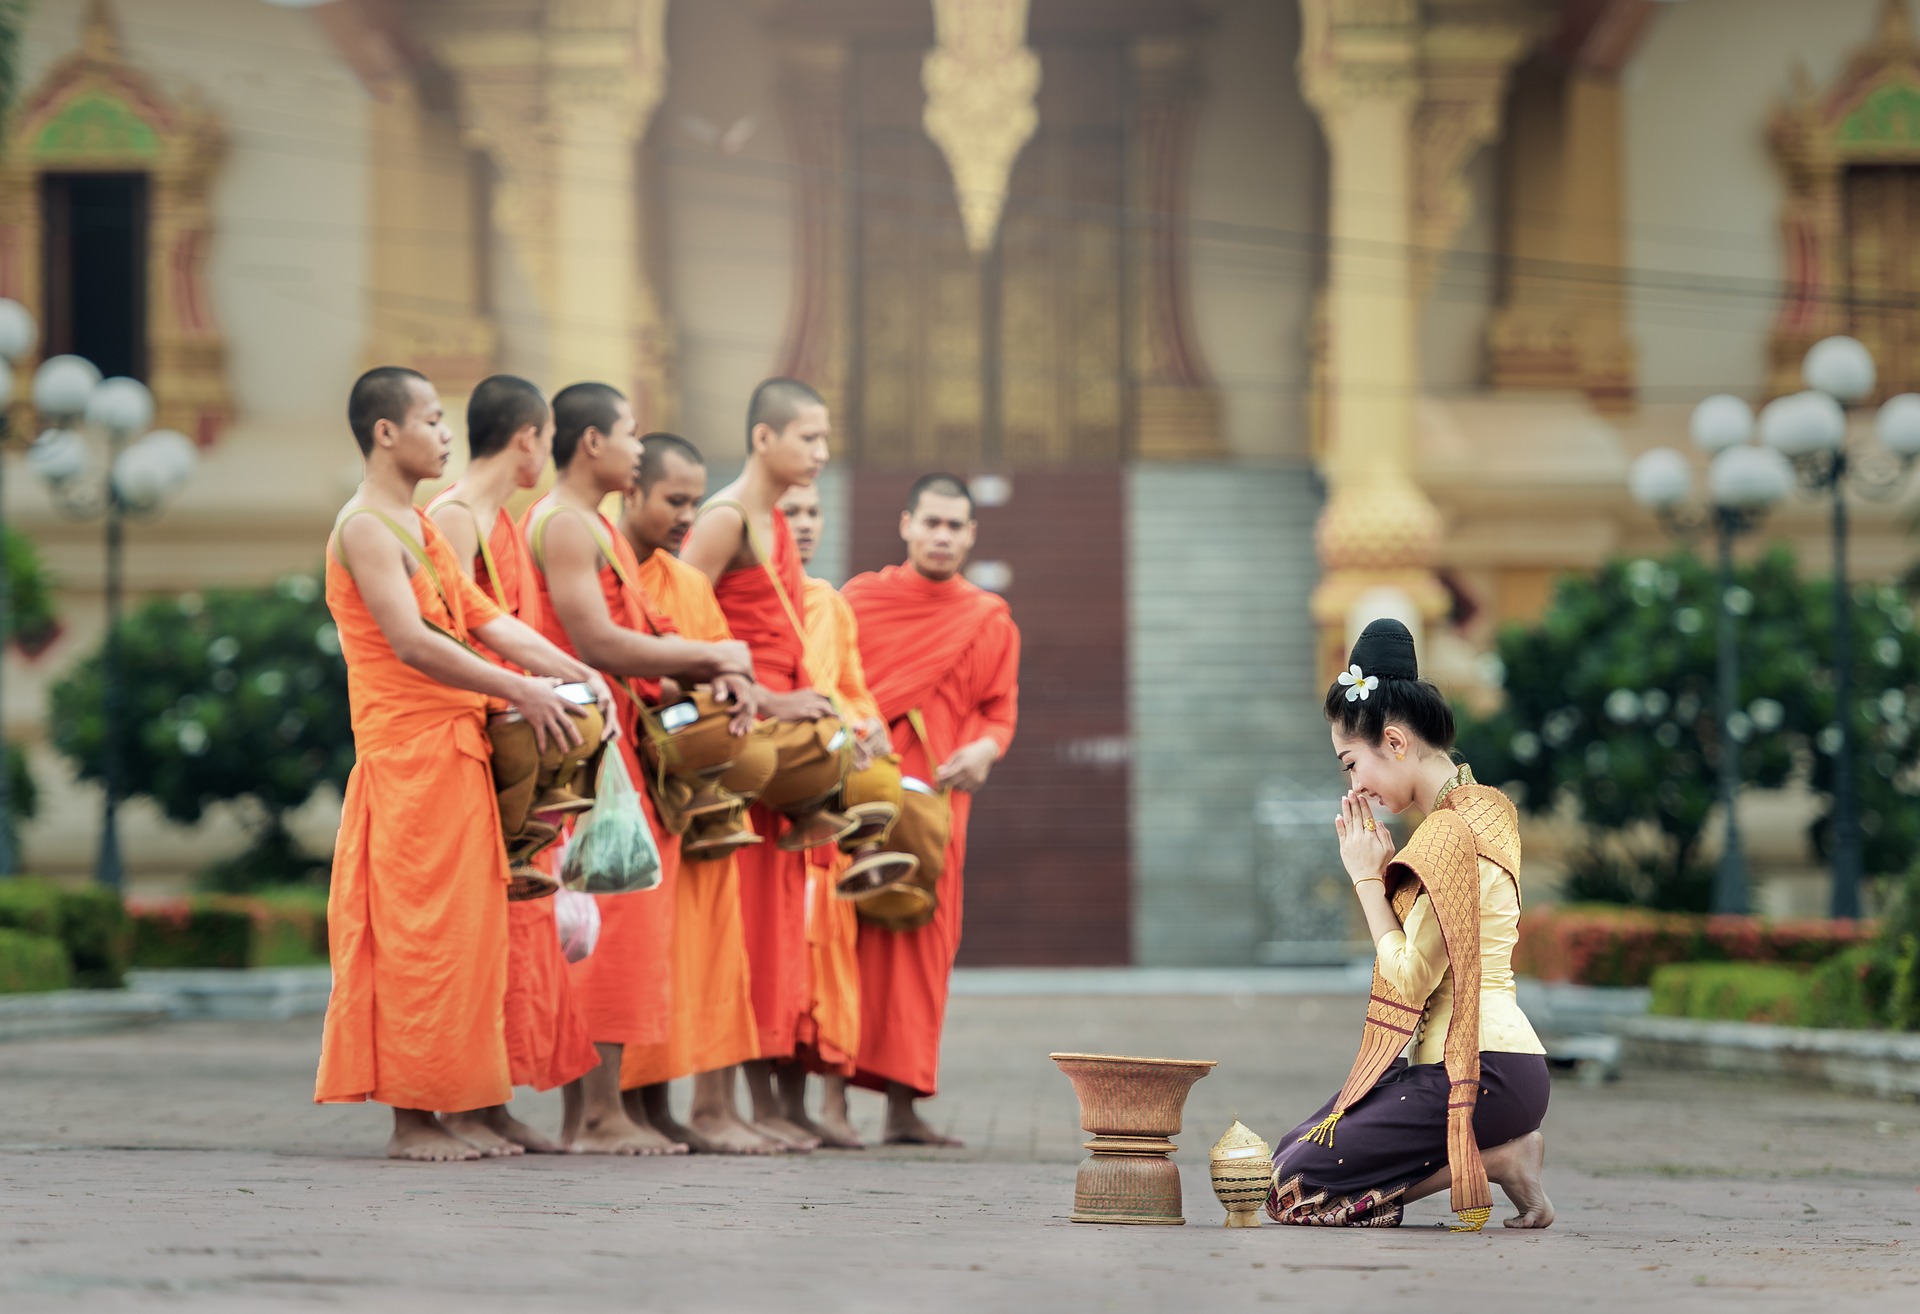 Thailand monk